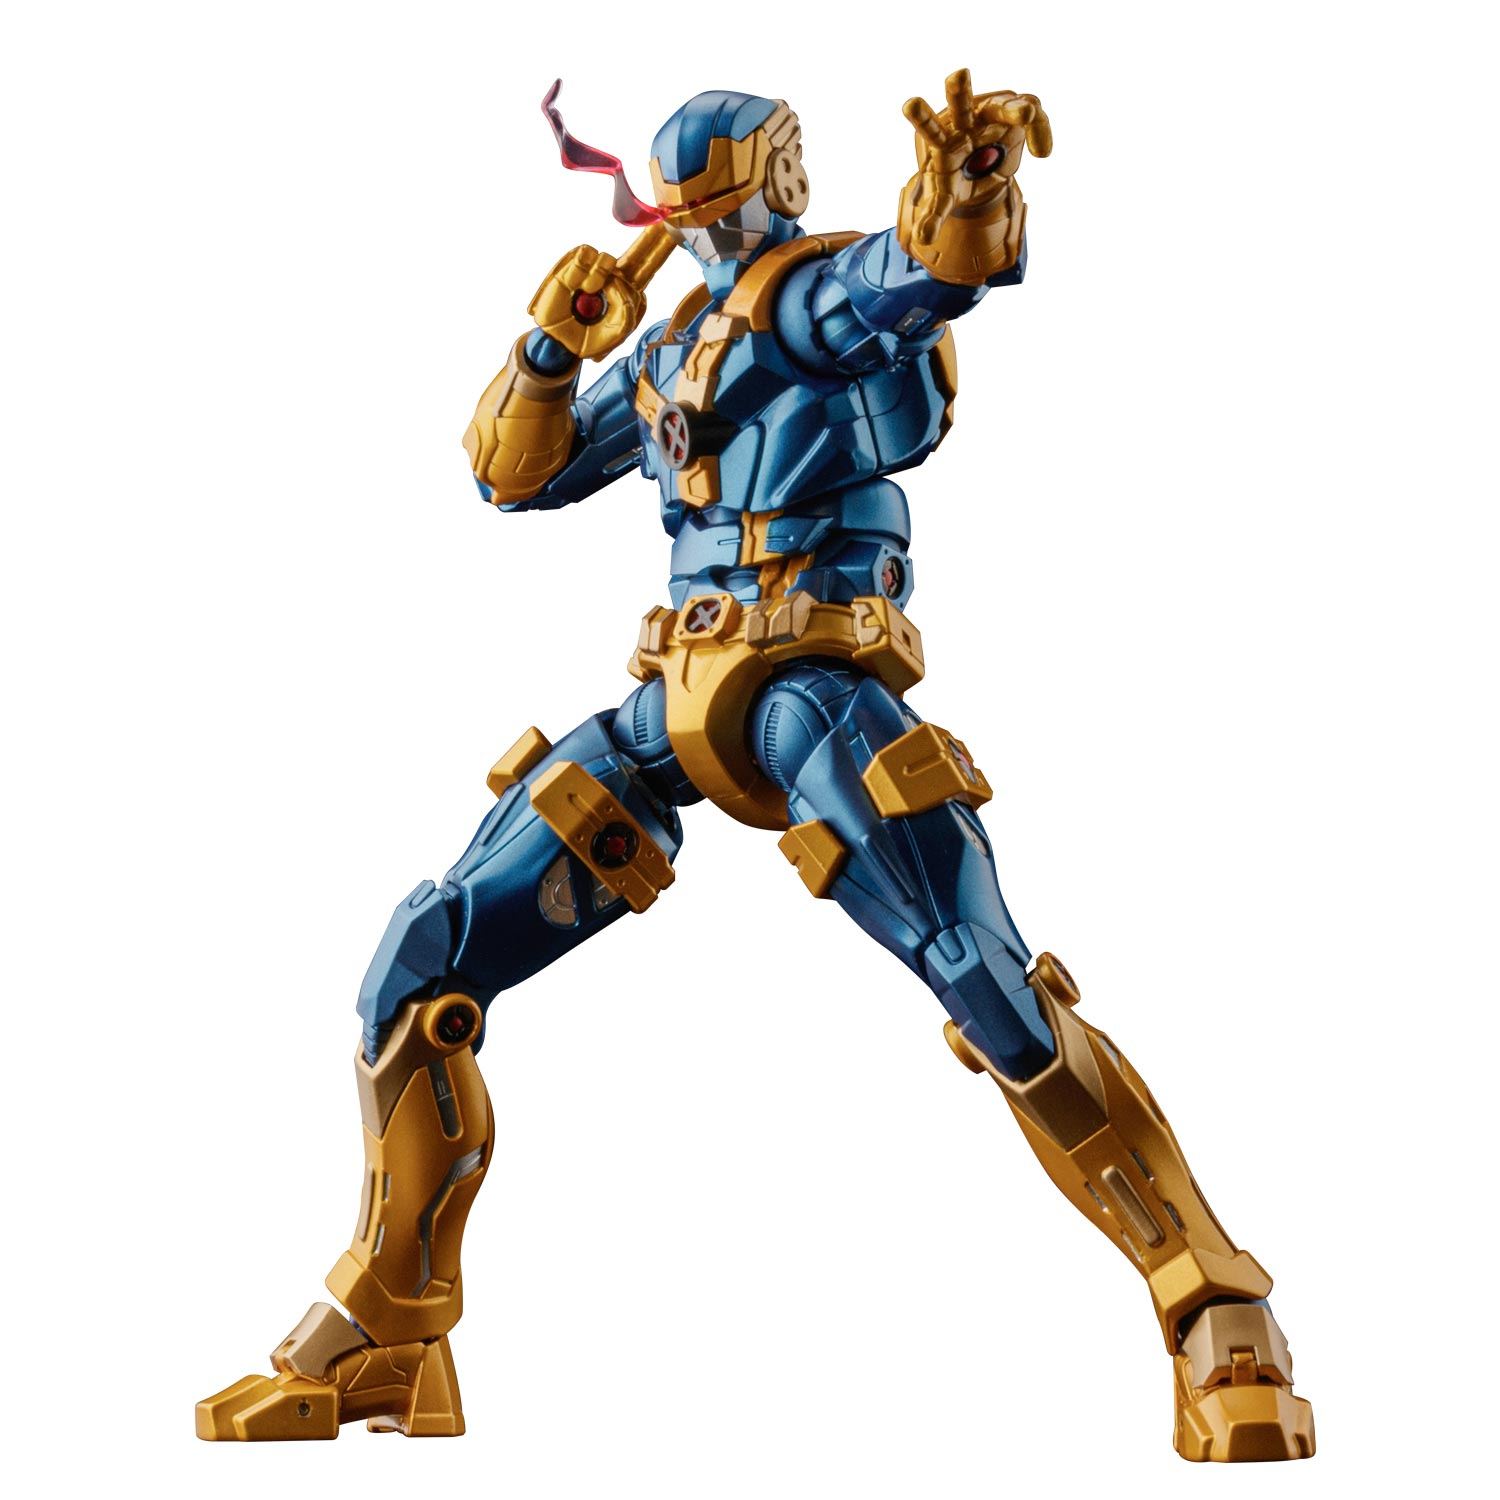 Fighting Armor X-Men Action Figure: Cyclops Sentinel